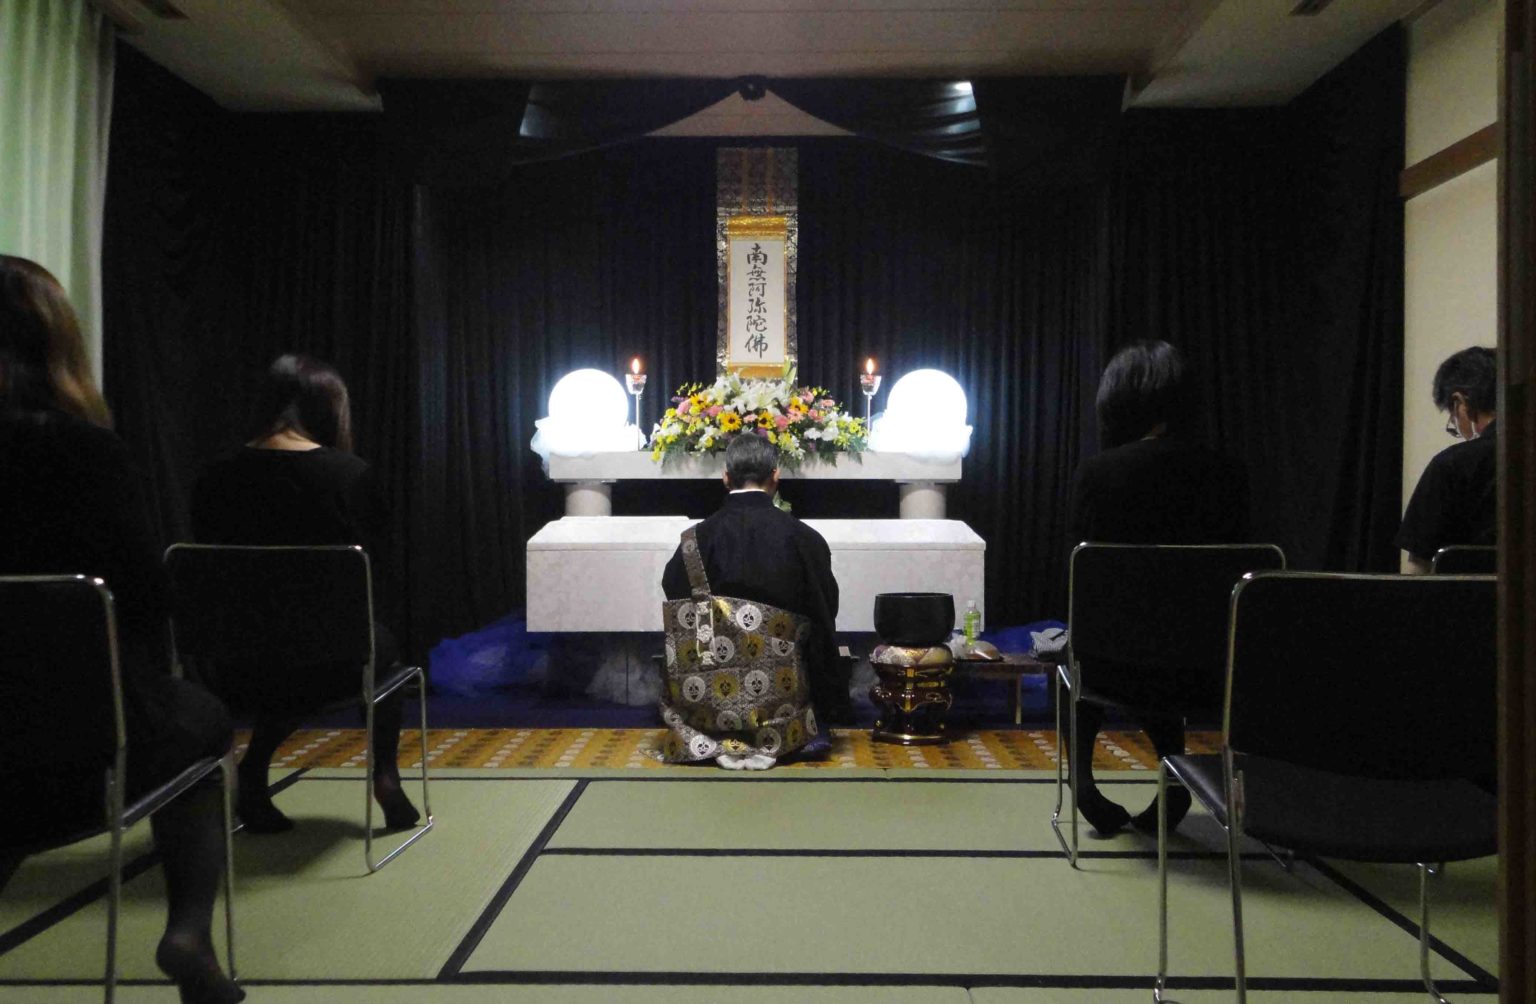 淀川区での福祉葬の実例紹介です。淀川区で福祉葬ができる葬儀社をお探しなら「大阪福祉葬の葬優社」までお電話下さい。